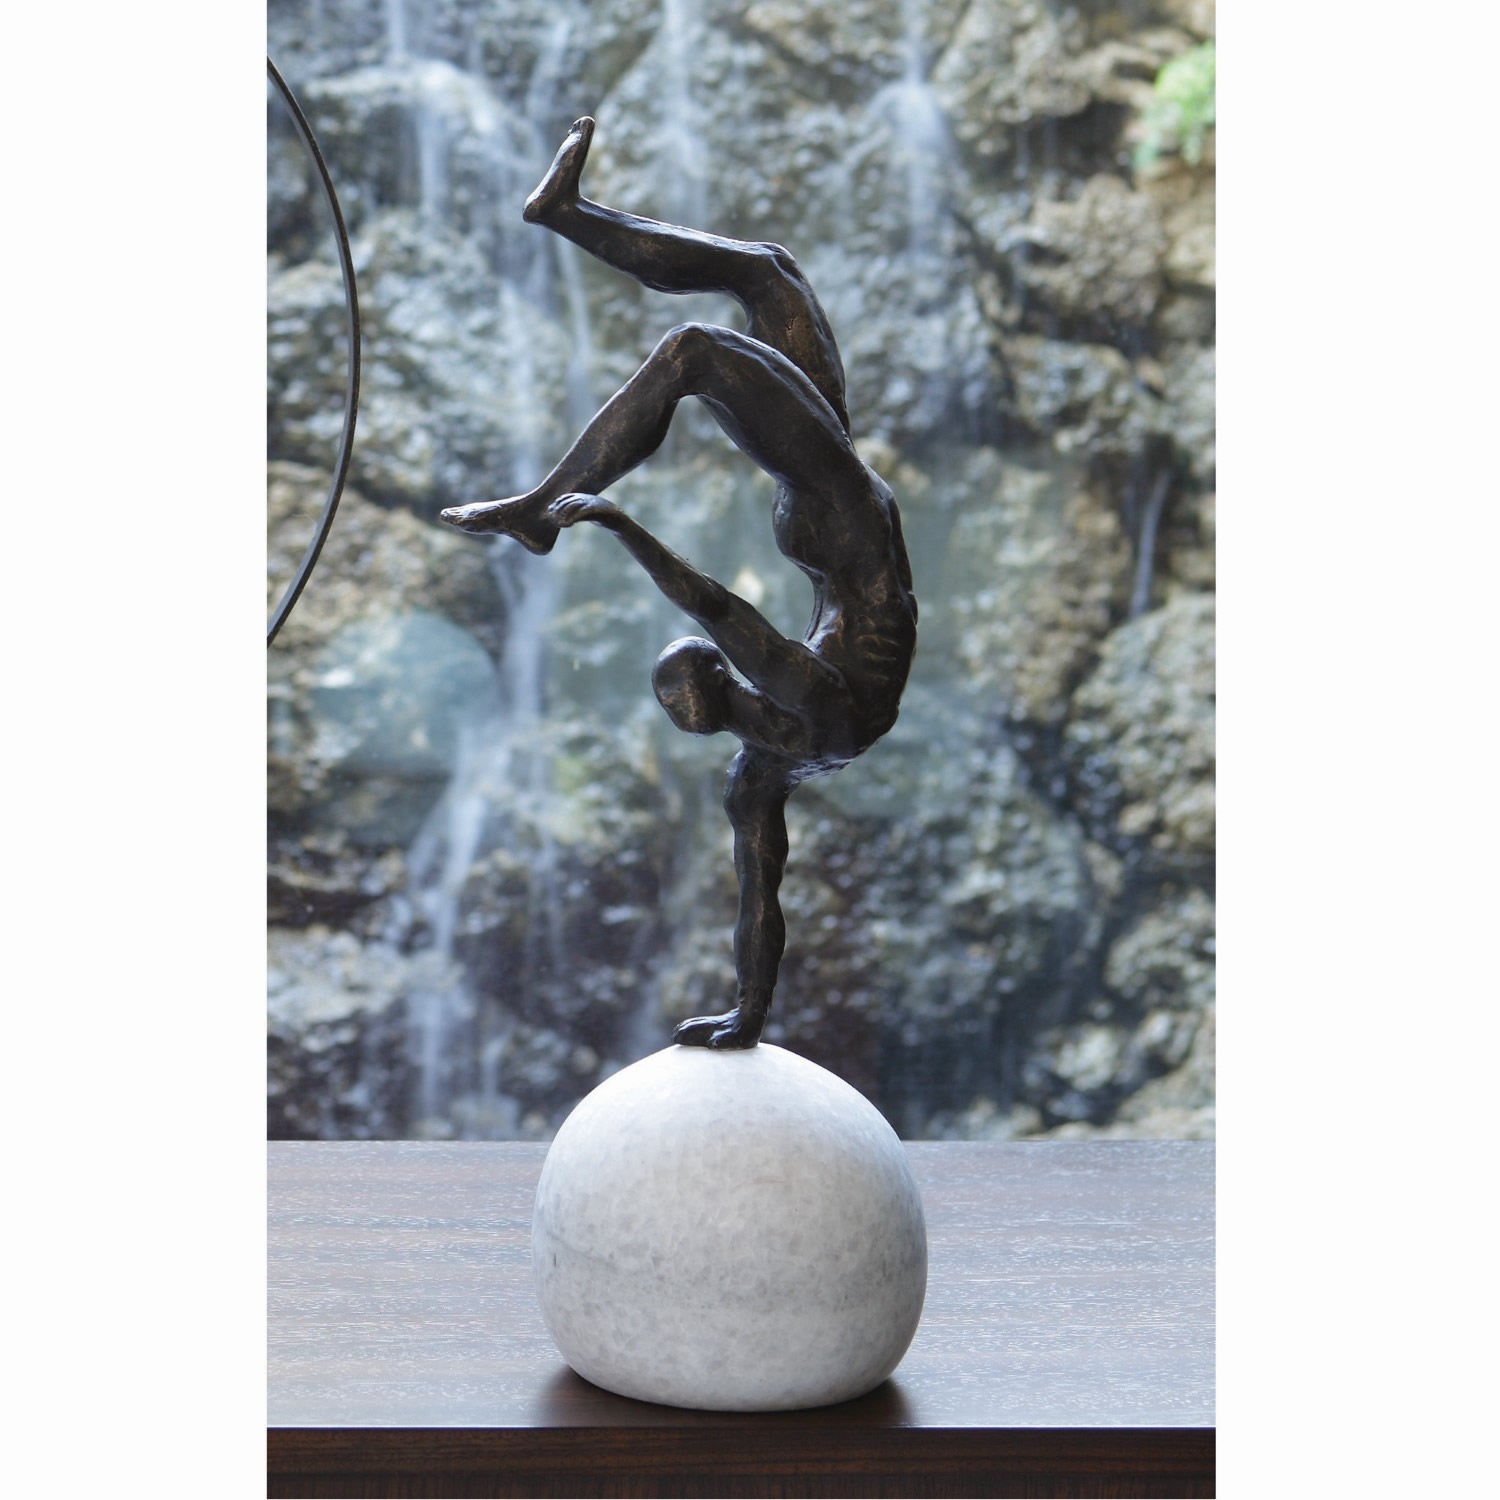 Acrobat Sculpture One Hand Balancing Act